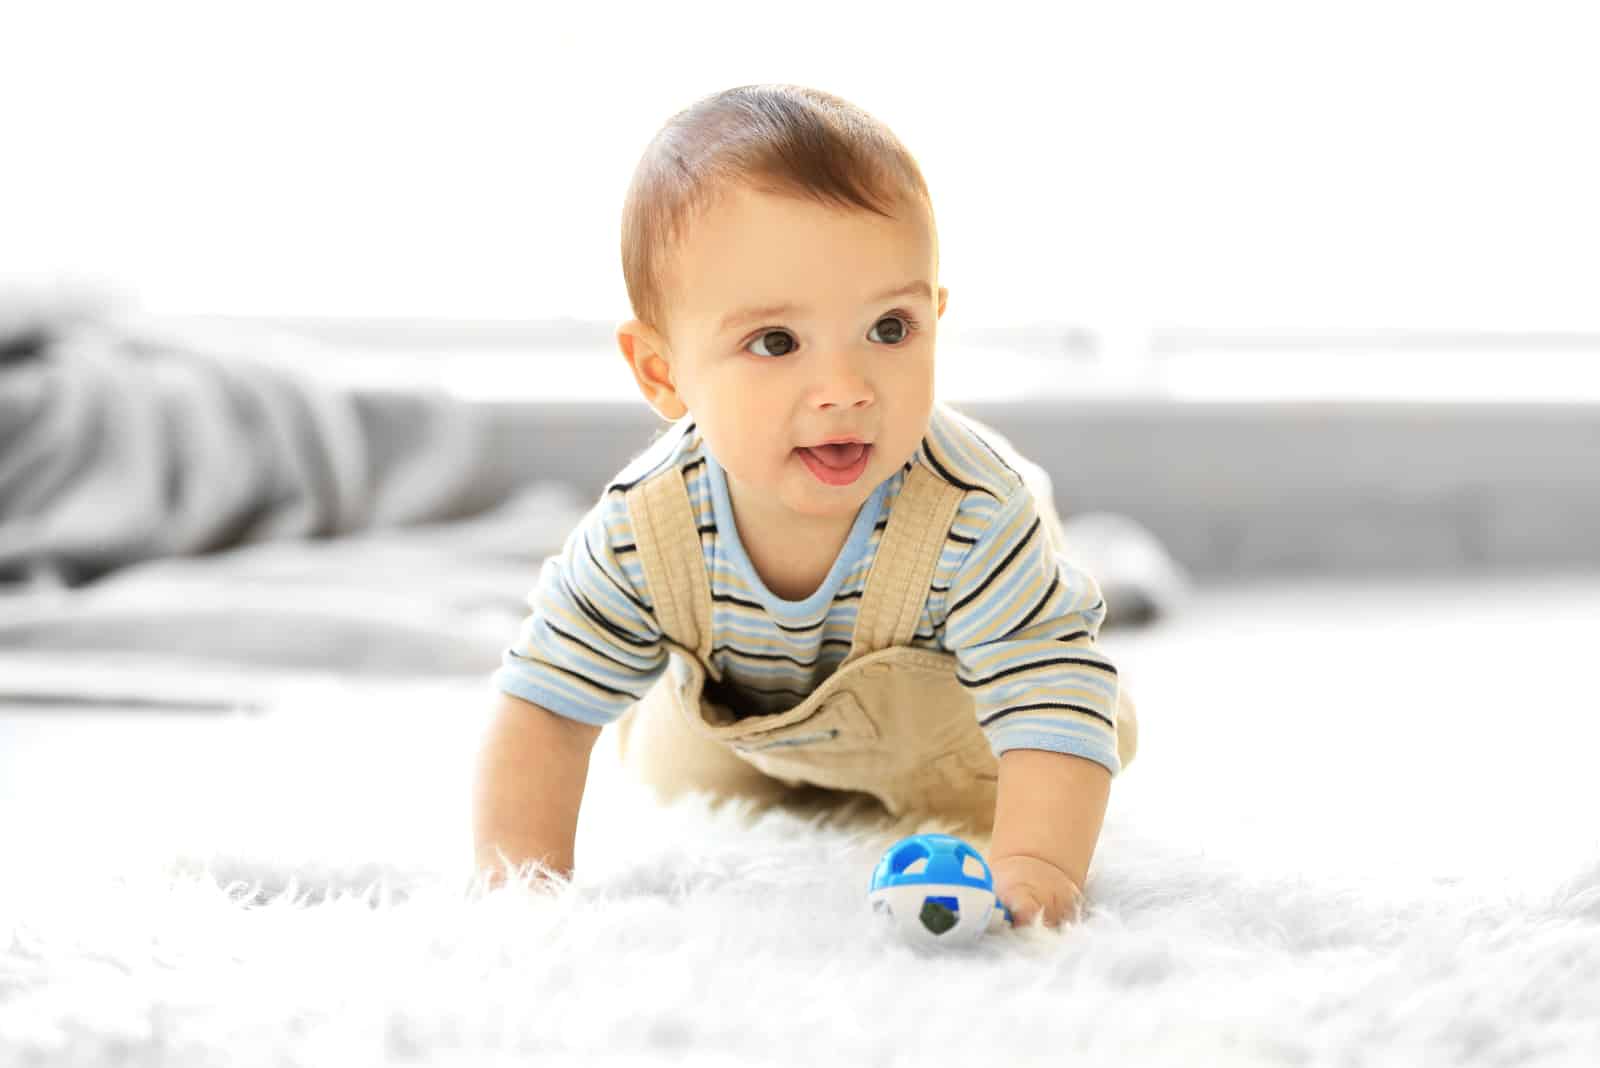 petit garçon rampant jouant avec son jouet